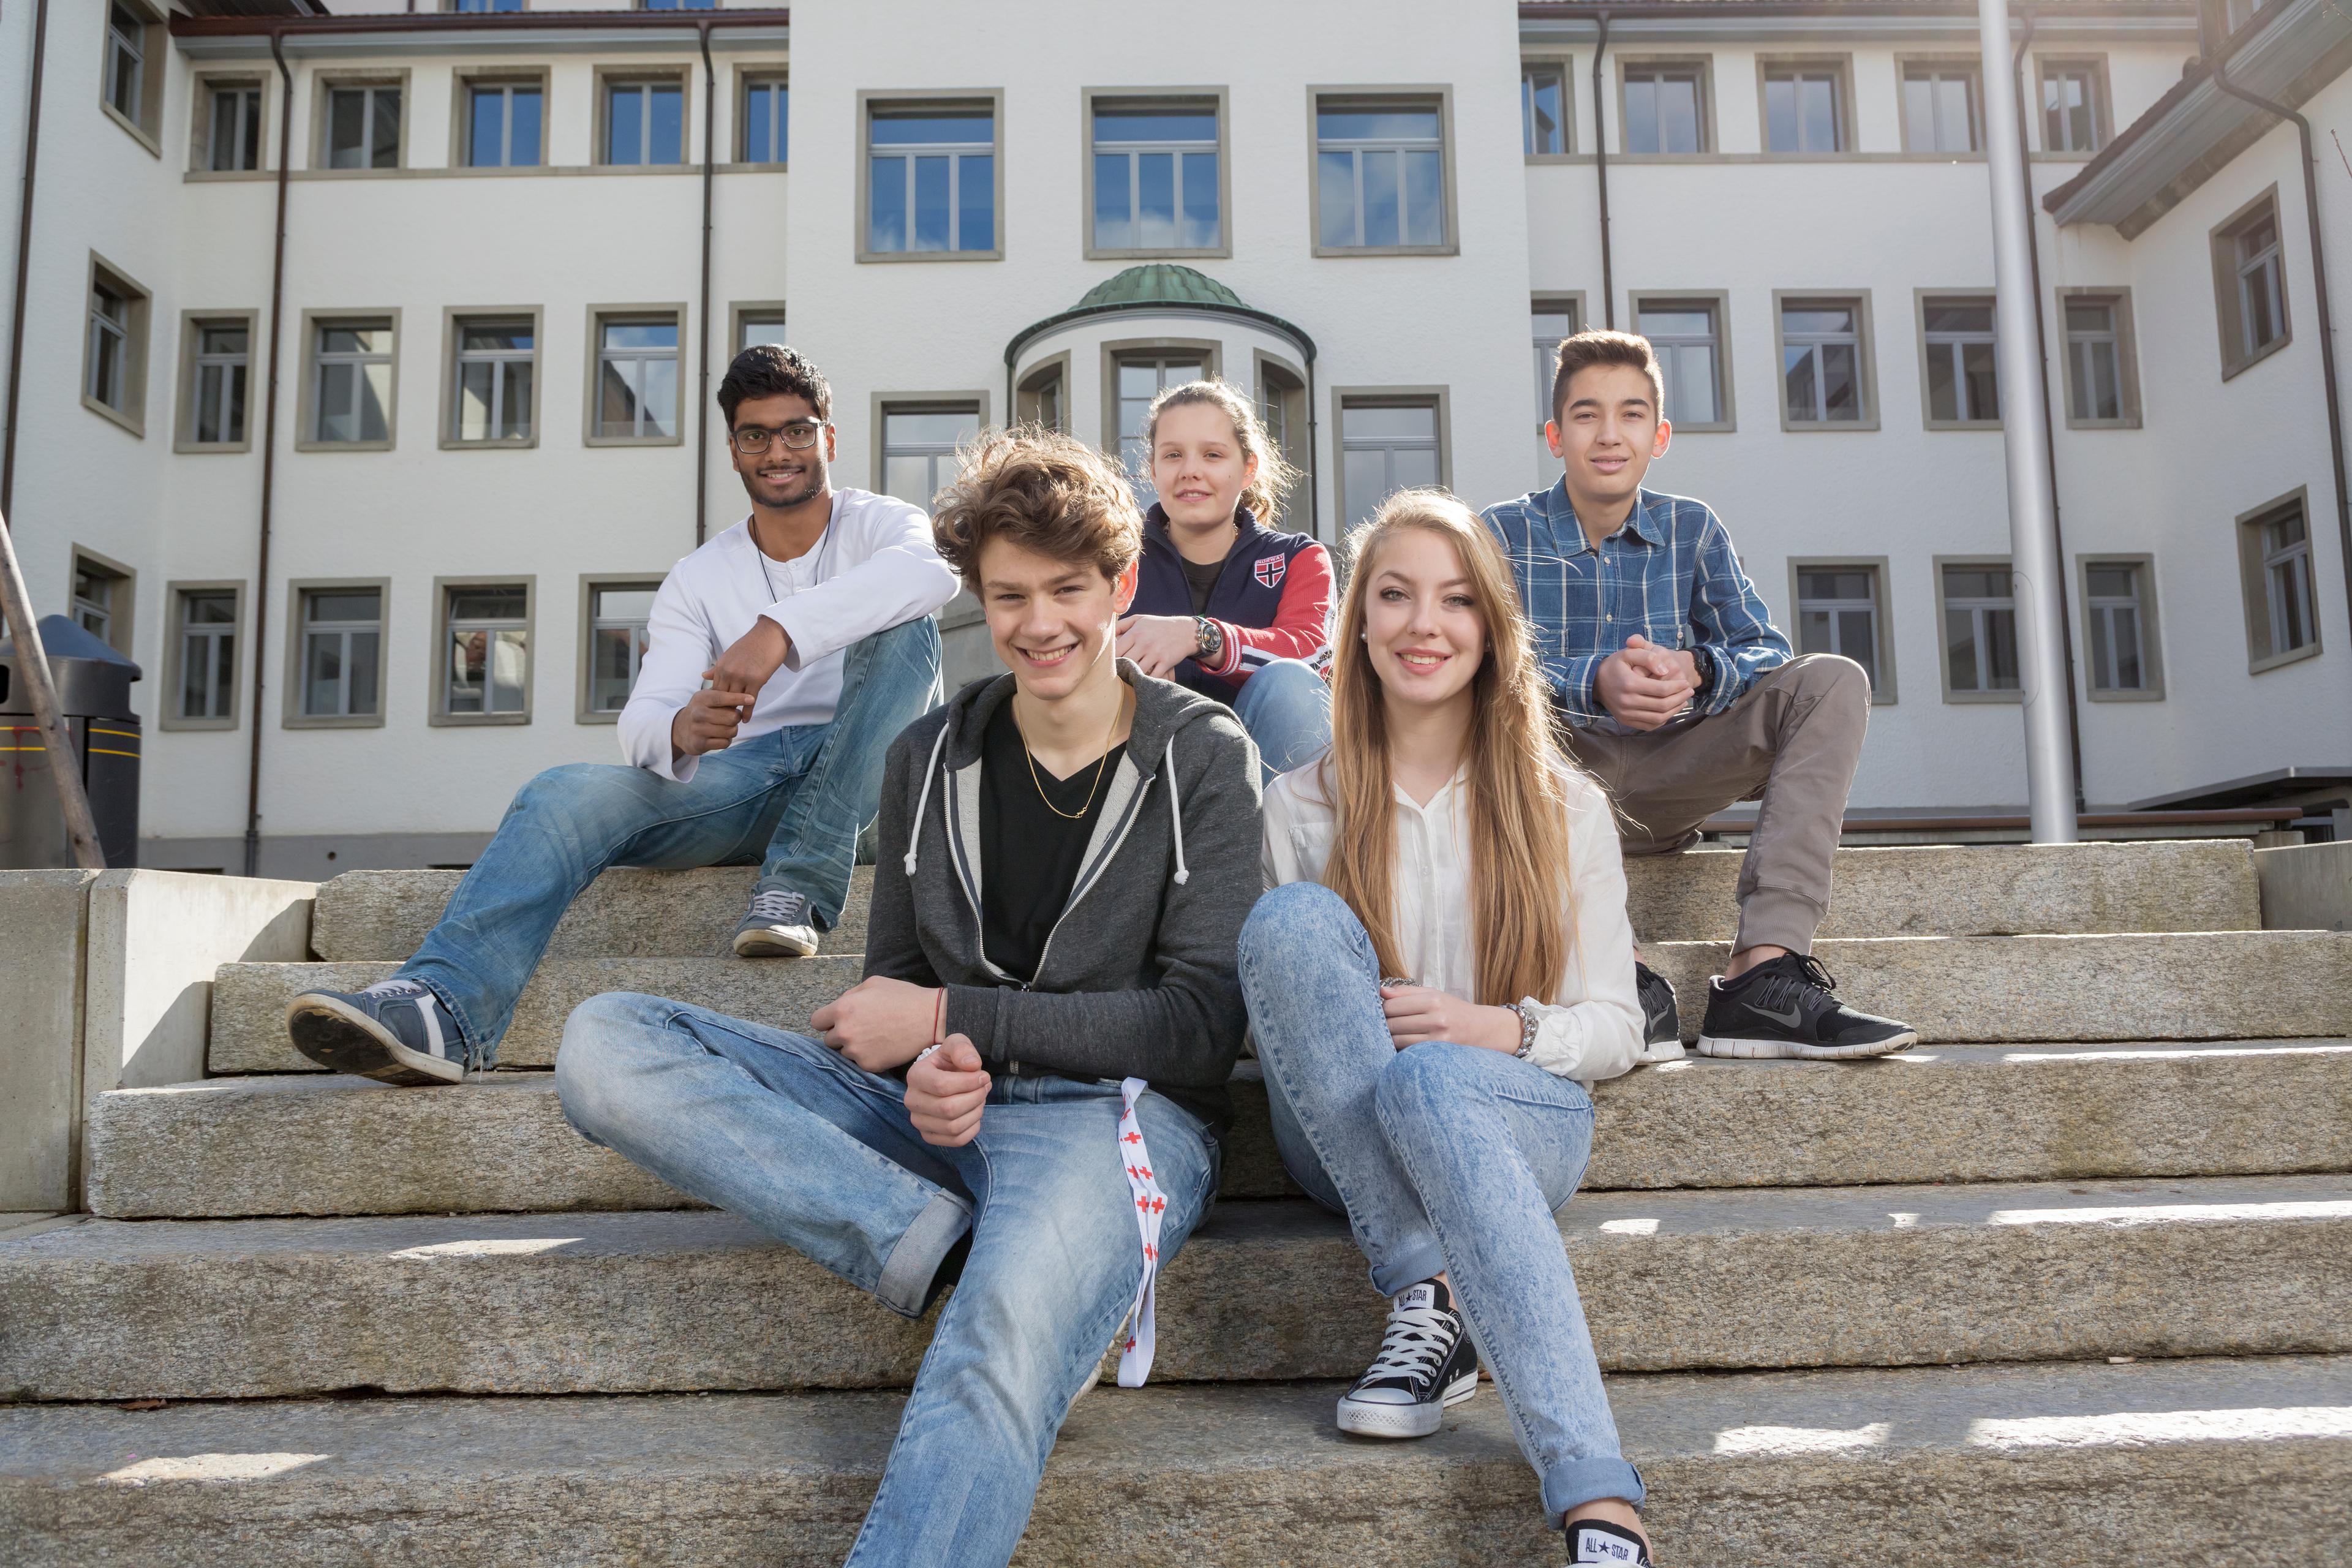 Cinq jeunes gens sur un escalier, un bâtiment scolaire en arrière-plan. Ils sourient gentiment.